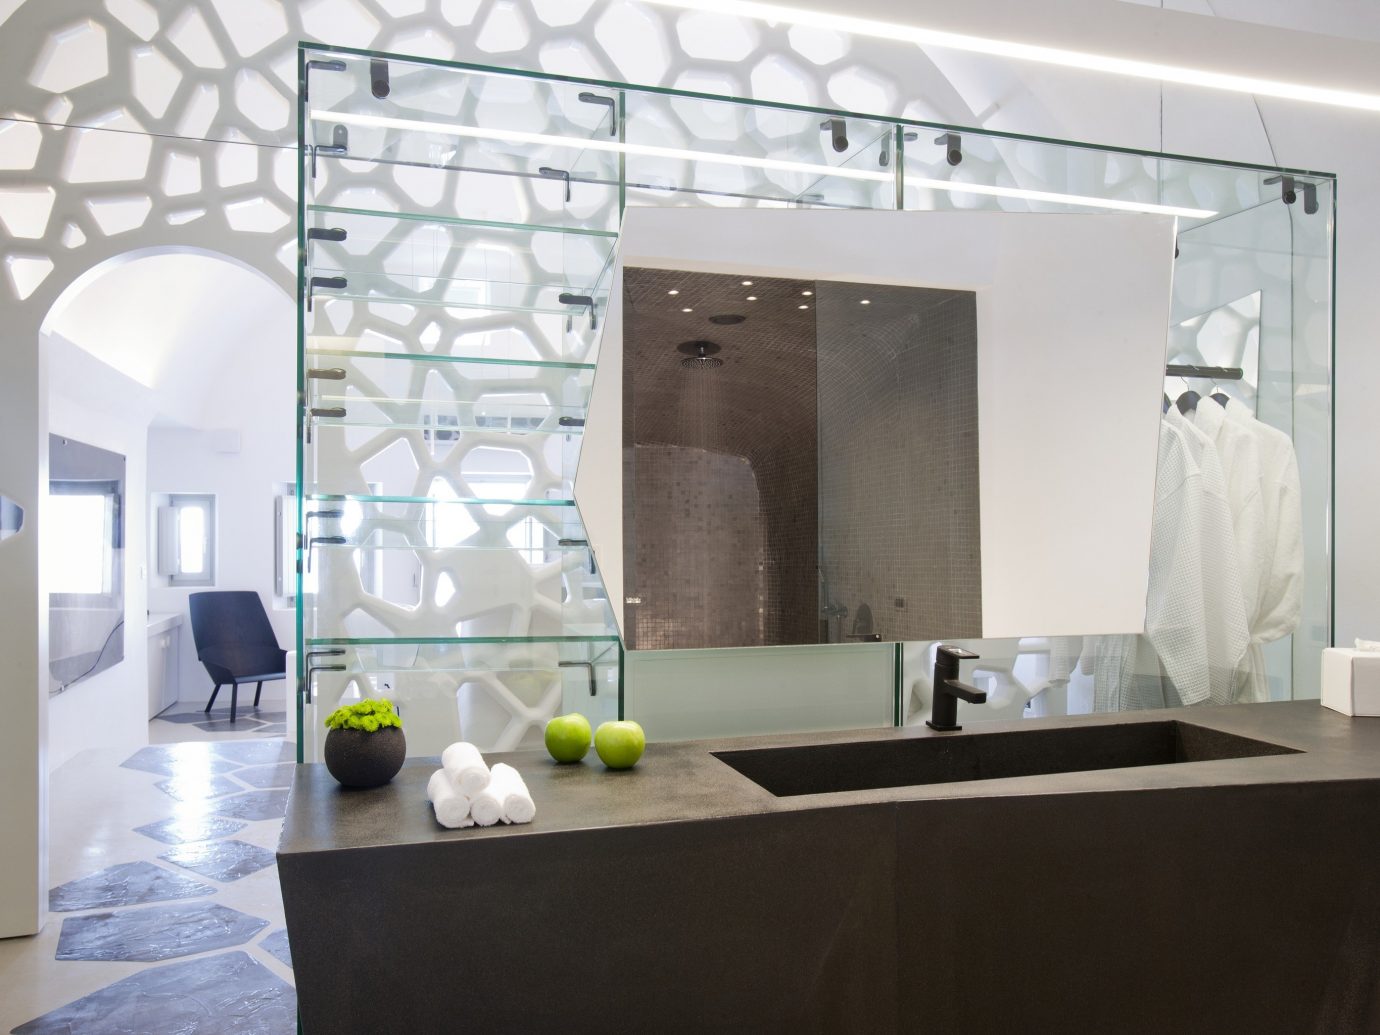 ギリシャホテル高級旅行サントリーニ島屋内インテリアデザイン壁天井床ガラス床材インテリアデザイナーロフトテーブルリビングルーム